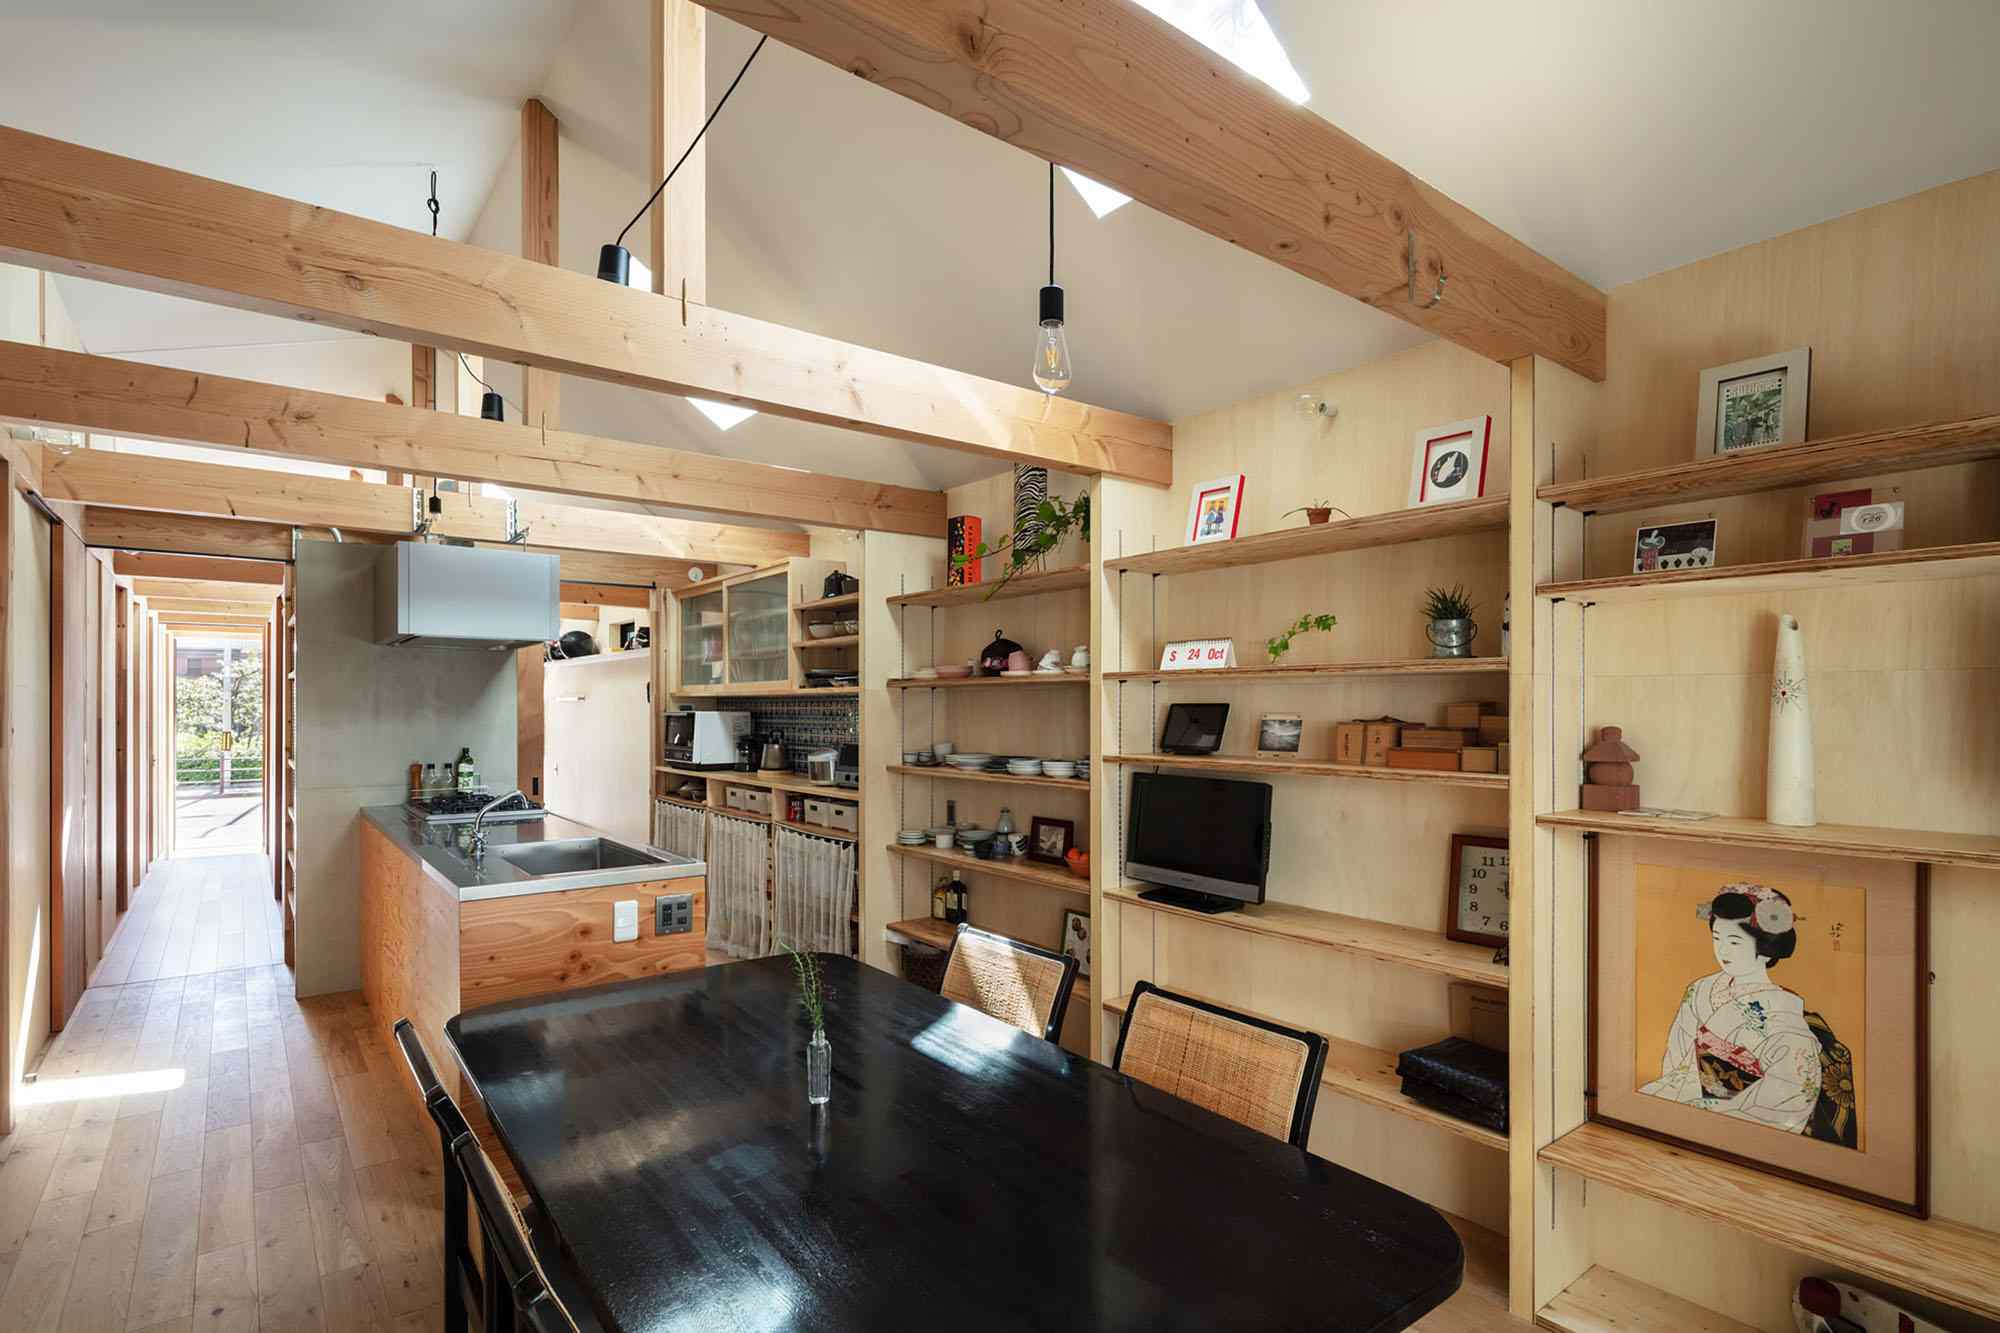 Yoshihiro Yamamoto Architects Atelier Long走廊的Toolbox House